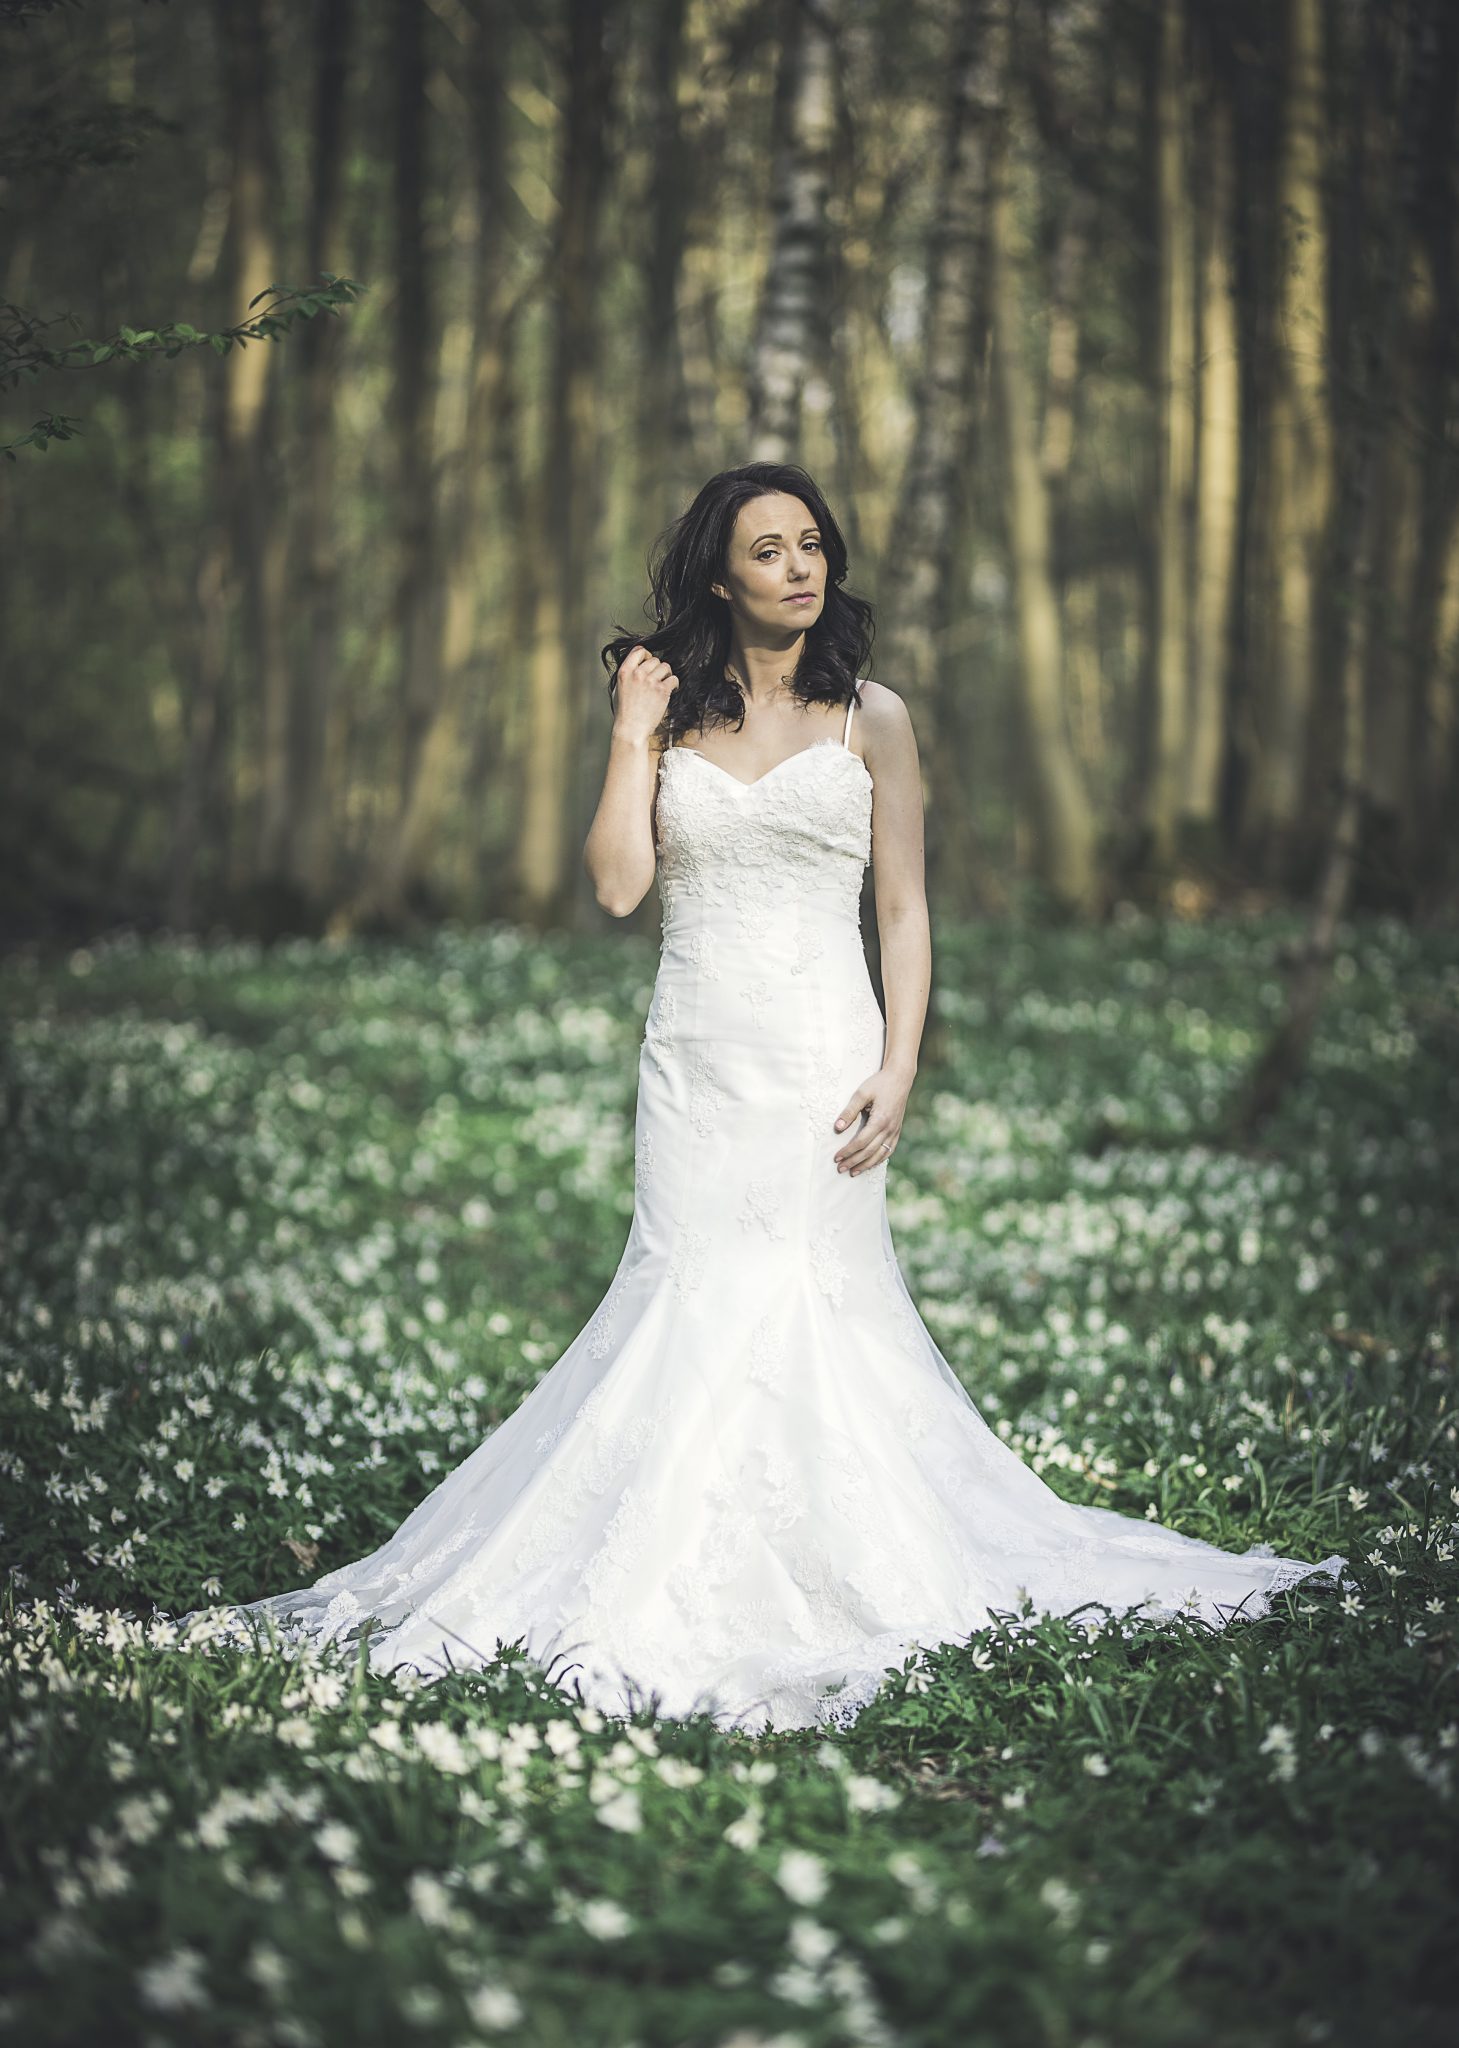 Bride at the Dreys woodland wedding venue